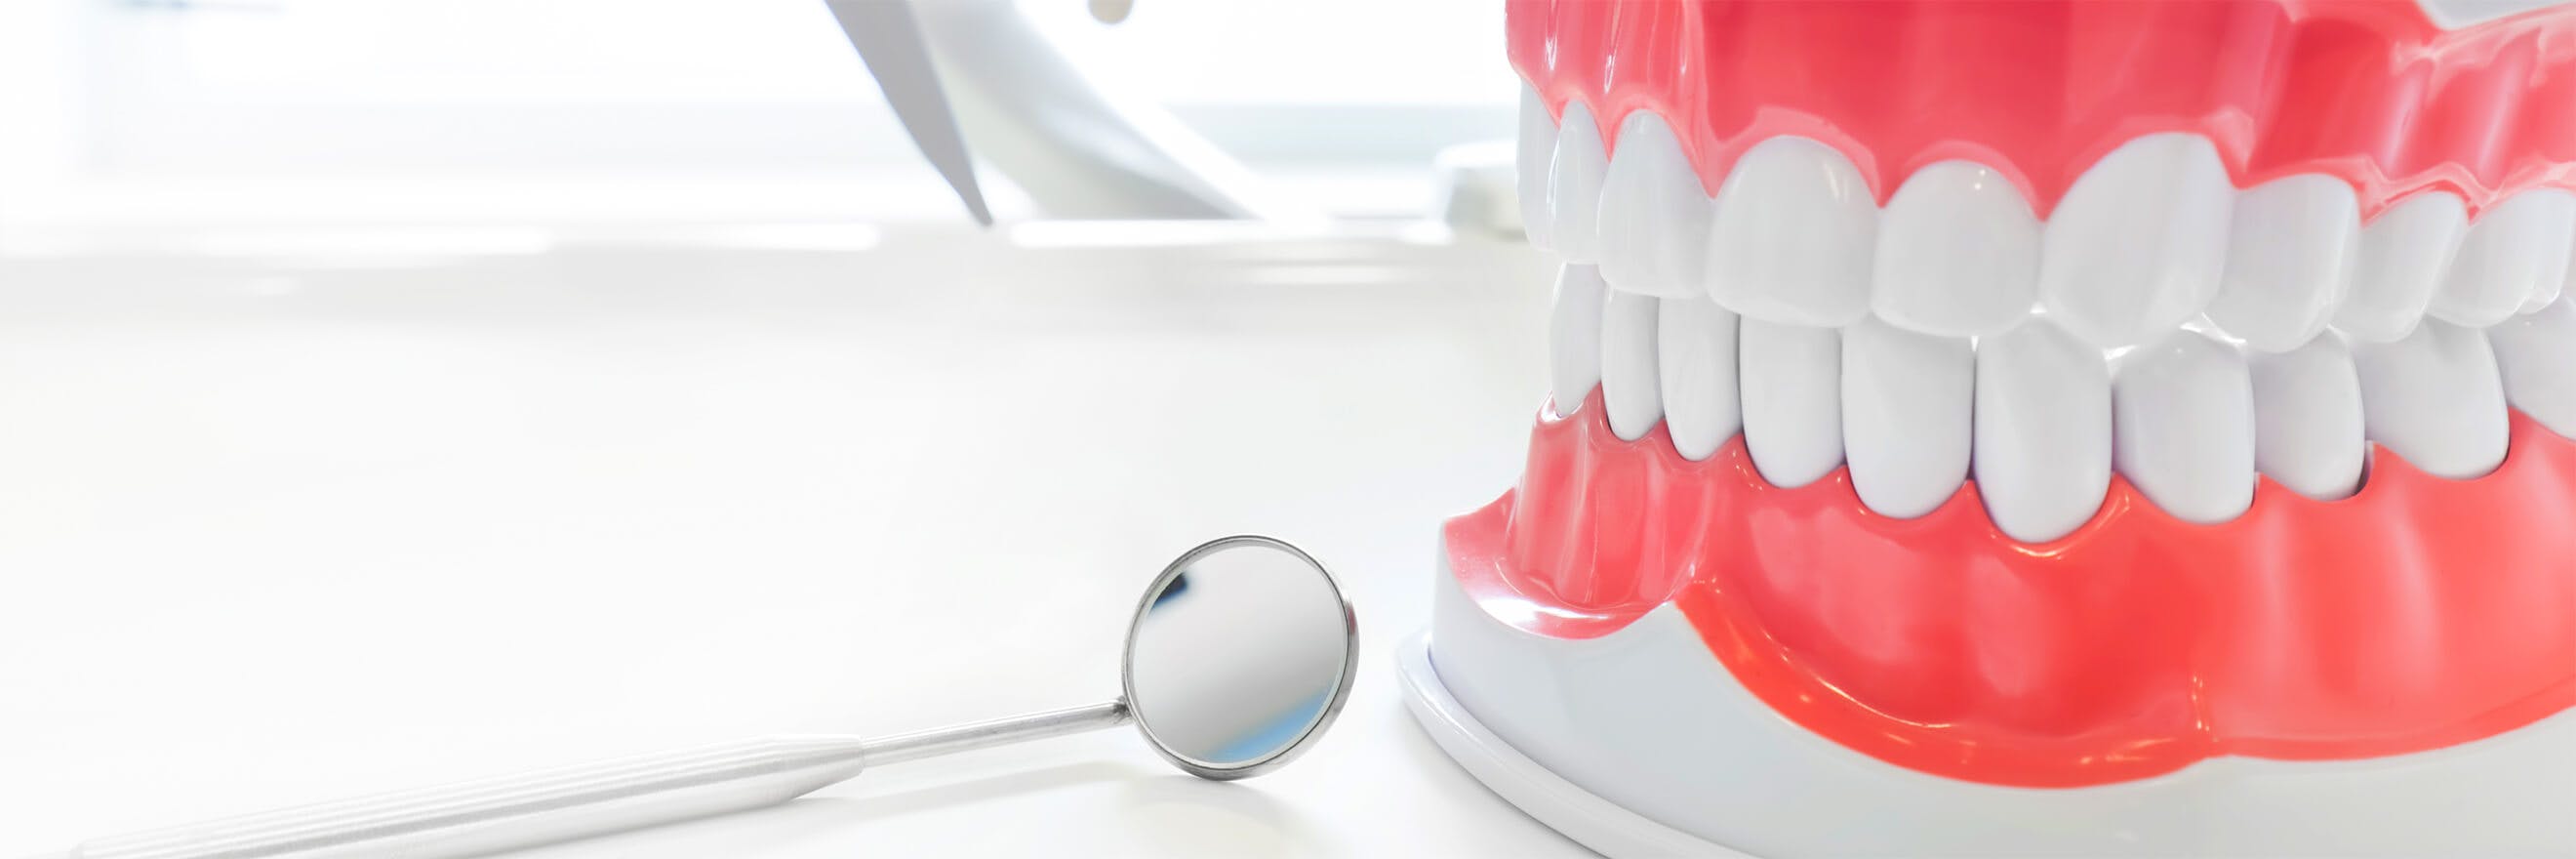 Modelo dentário e espelho de dentista